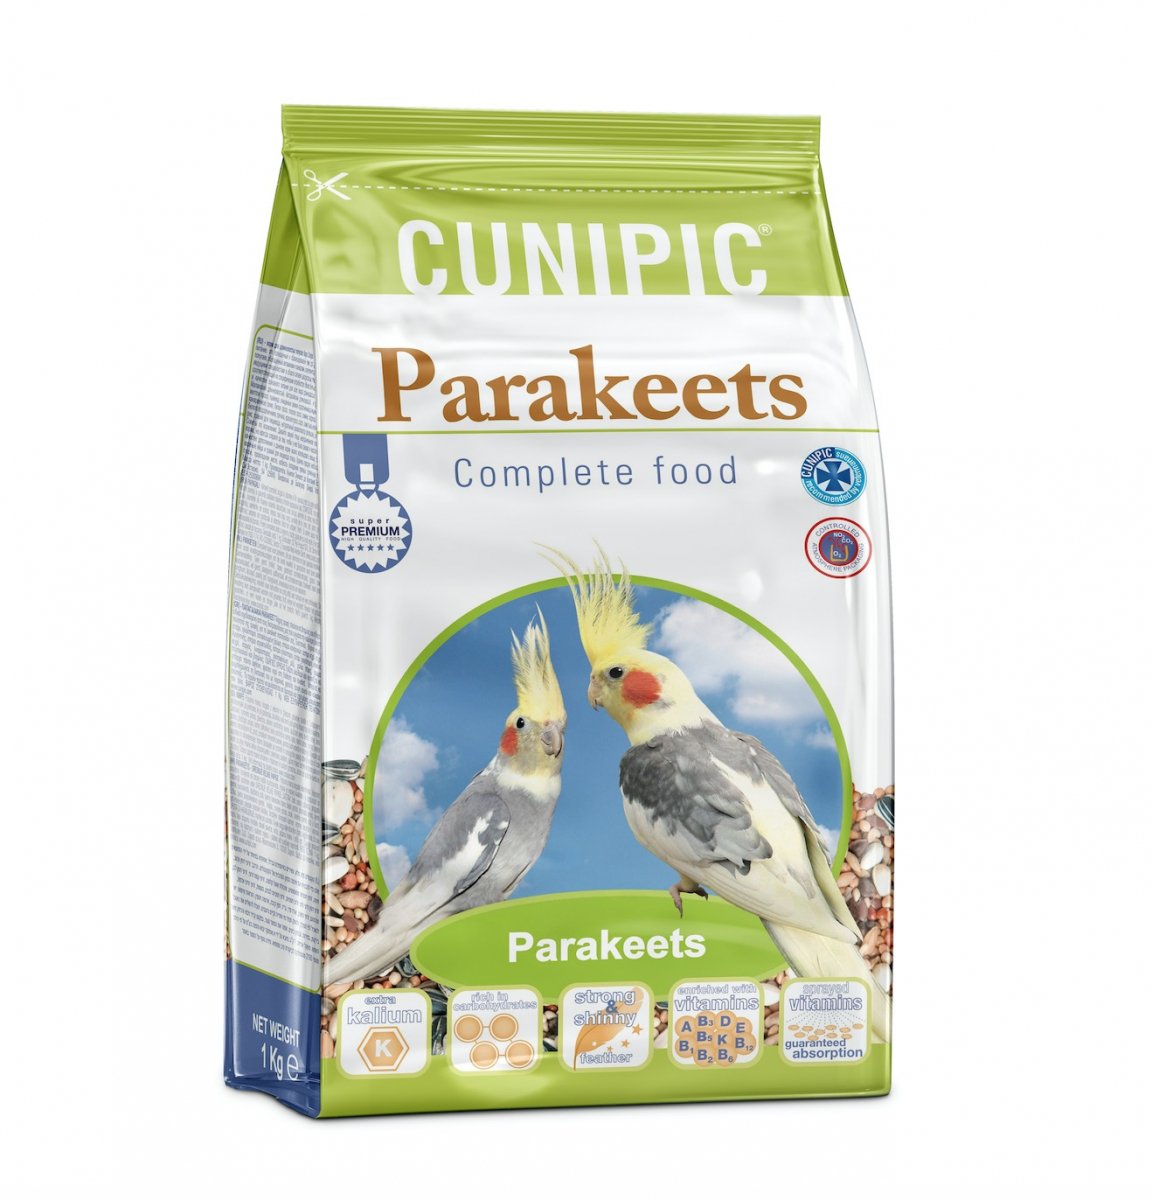 Cunipic Parakeets Premium Alimento completo para ninfas y cotorras